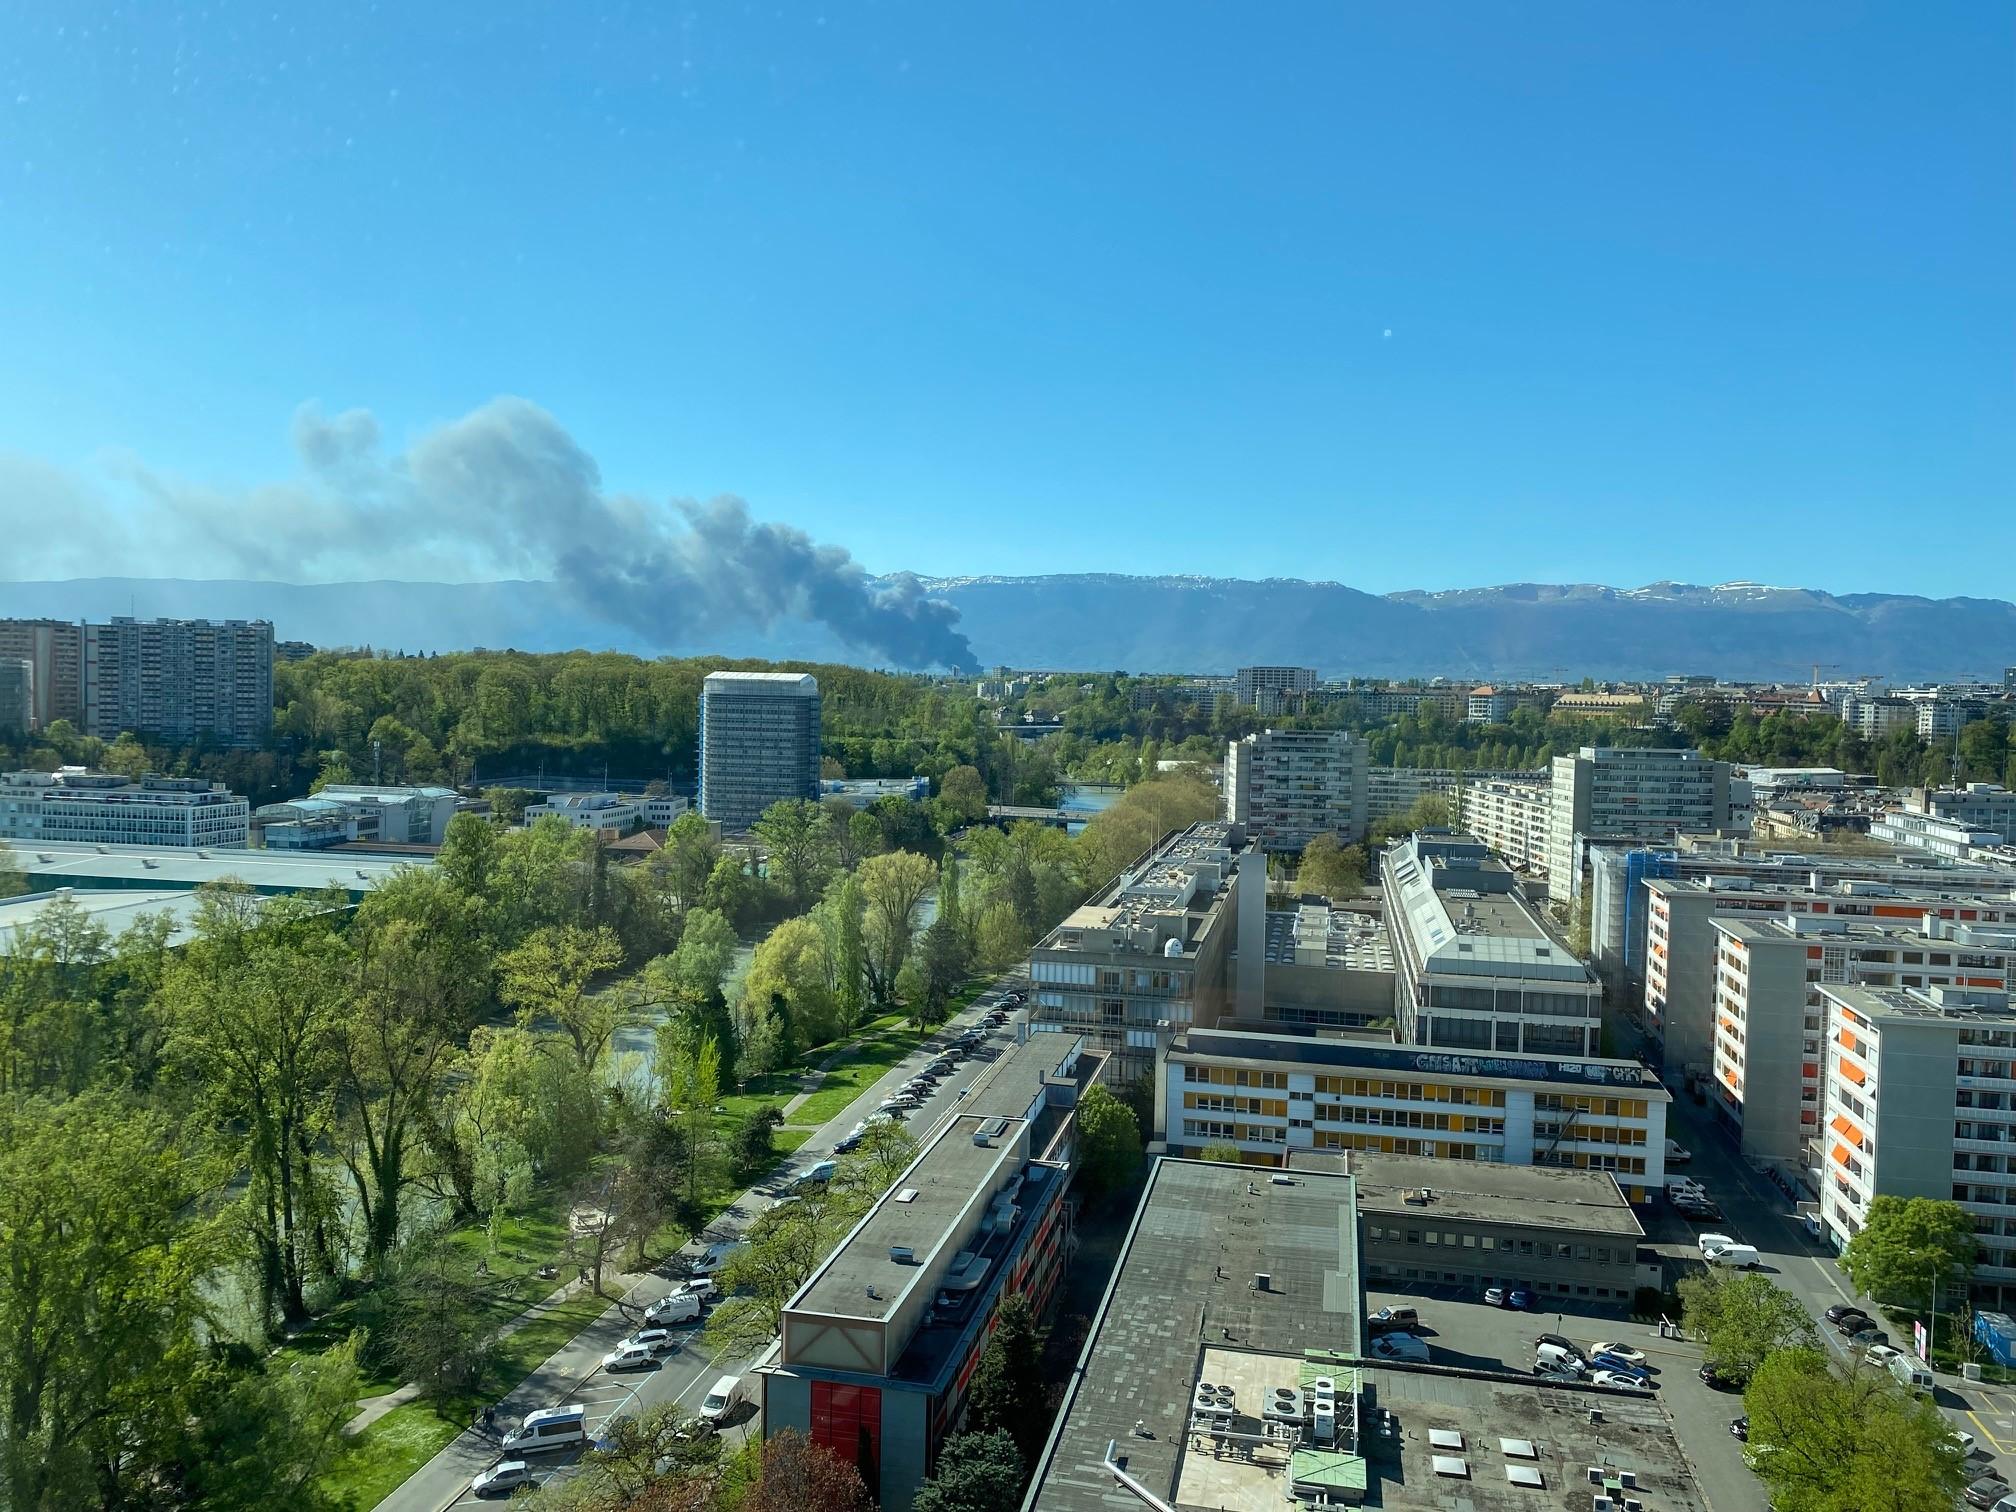 Un incendie s'est déclaré dans la zone industrielle de Satigny, à Genève. [RTS - Raphaël Leroy]